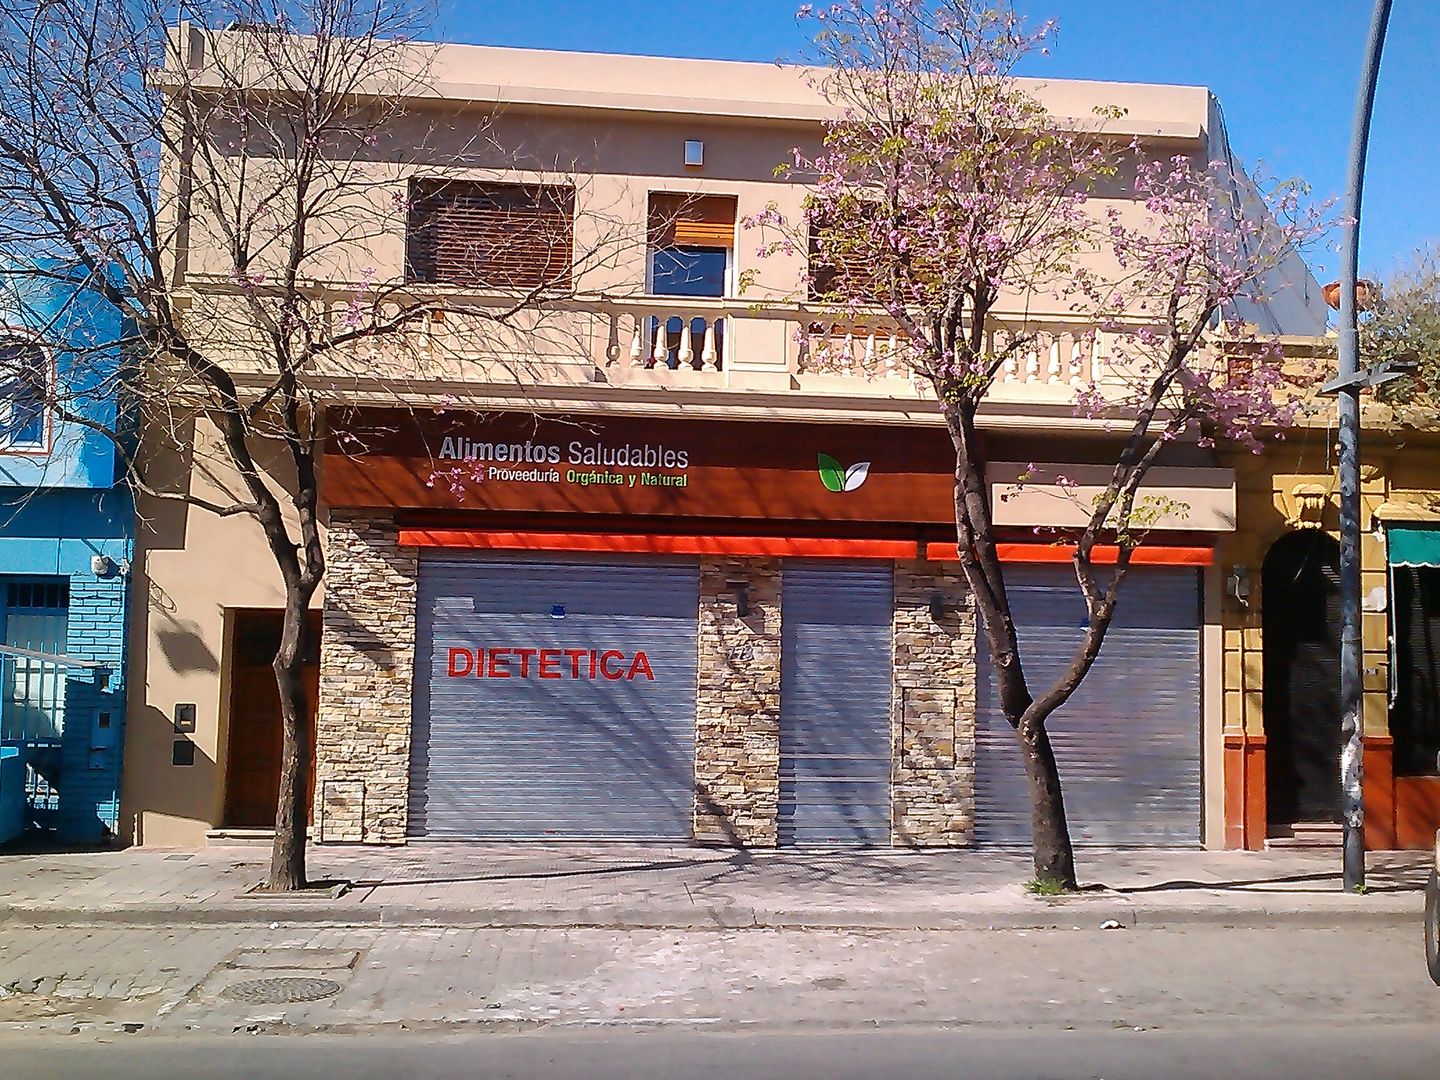 Local comercial a la calle, Faerman Stands y Asoc S.R.L. - Arquitectos - Rosario Faerman Stands y Asoc S.R.L. - Arquitectos - Rosario